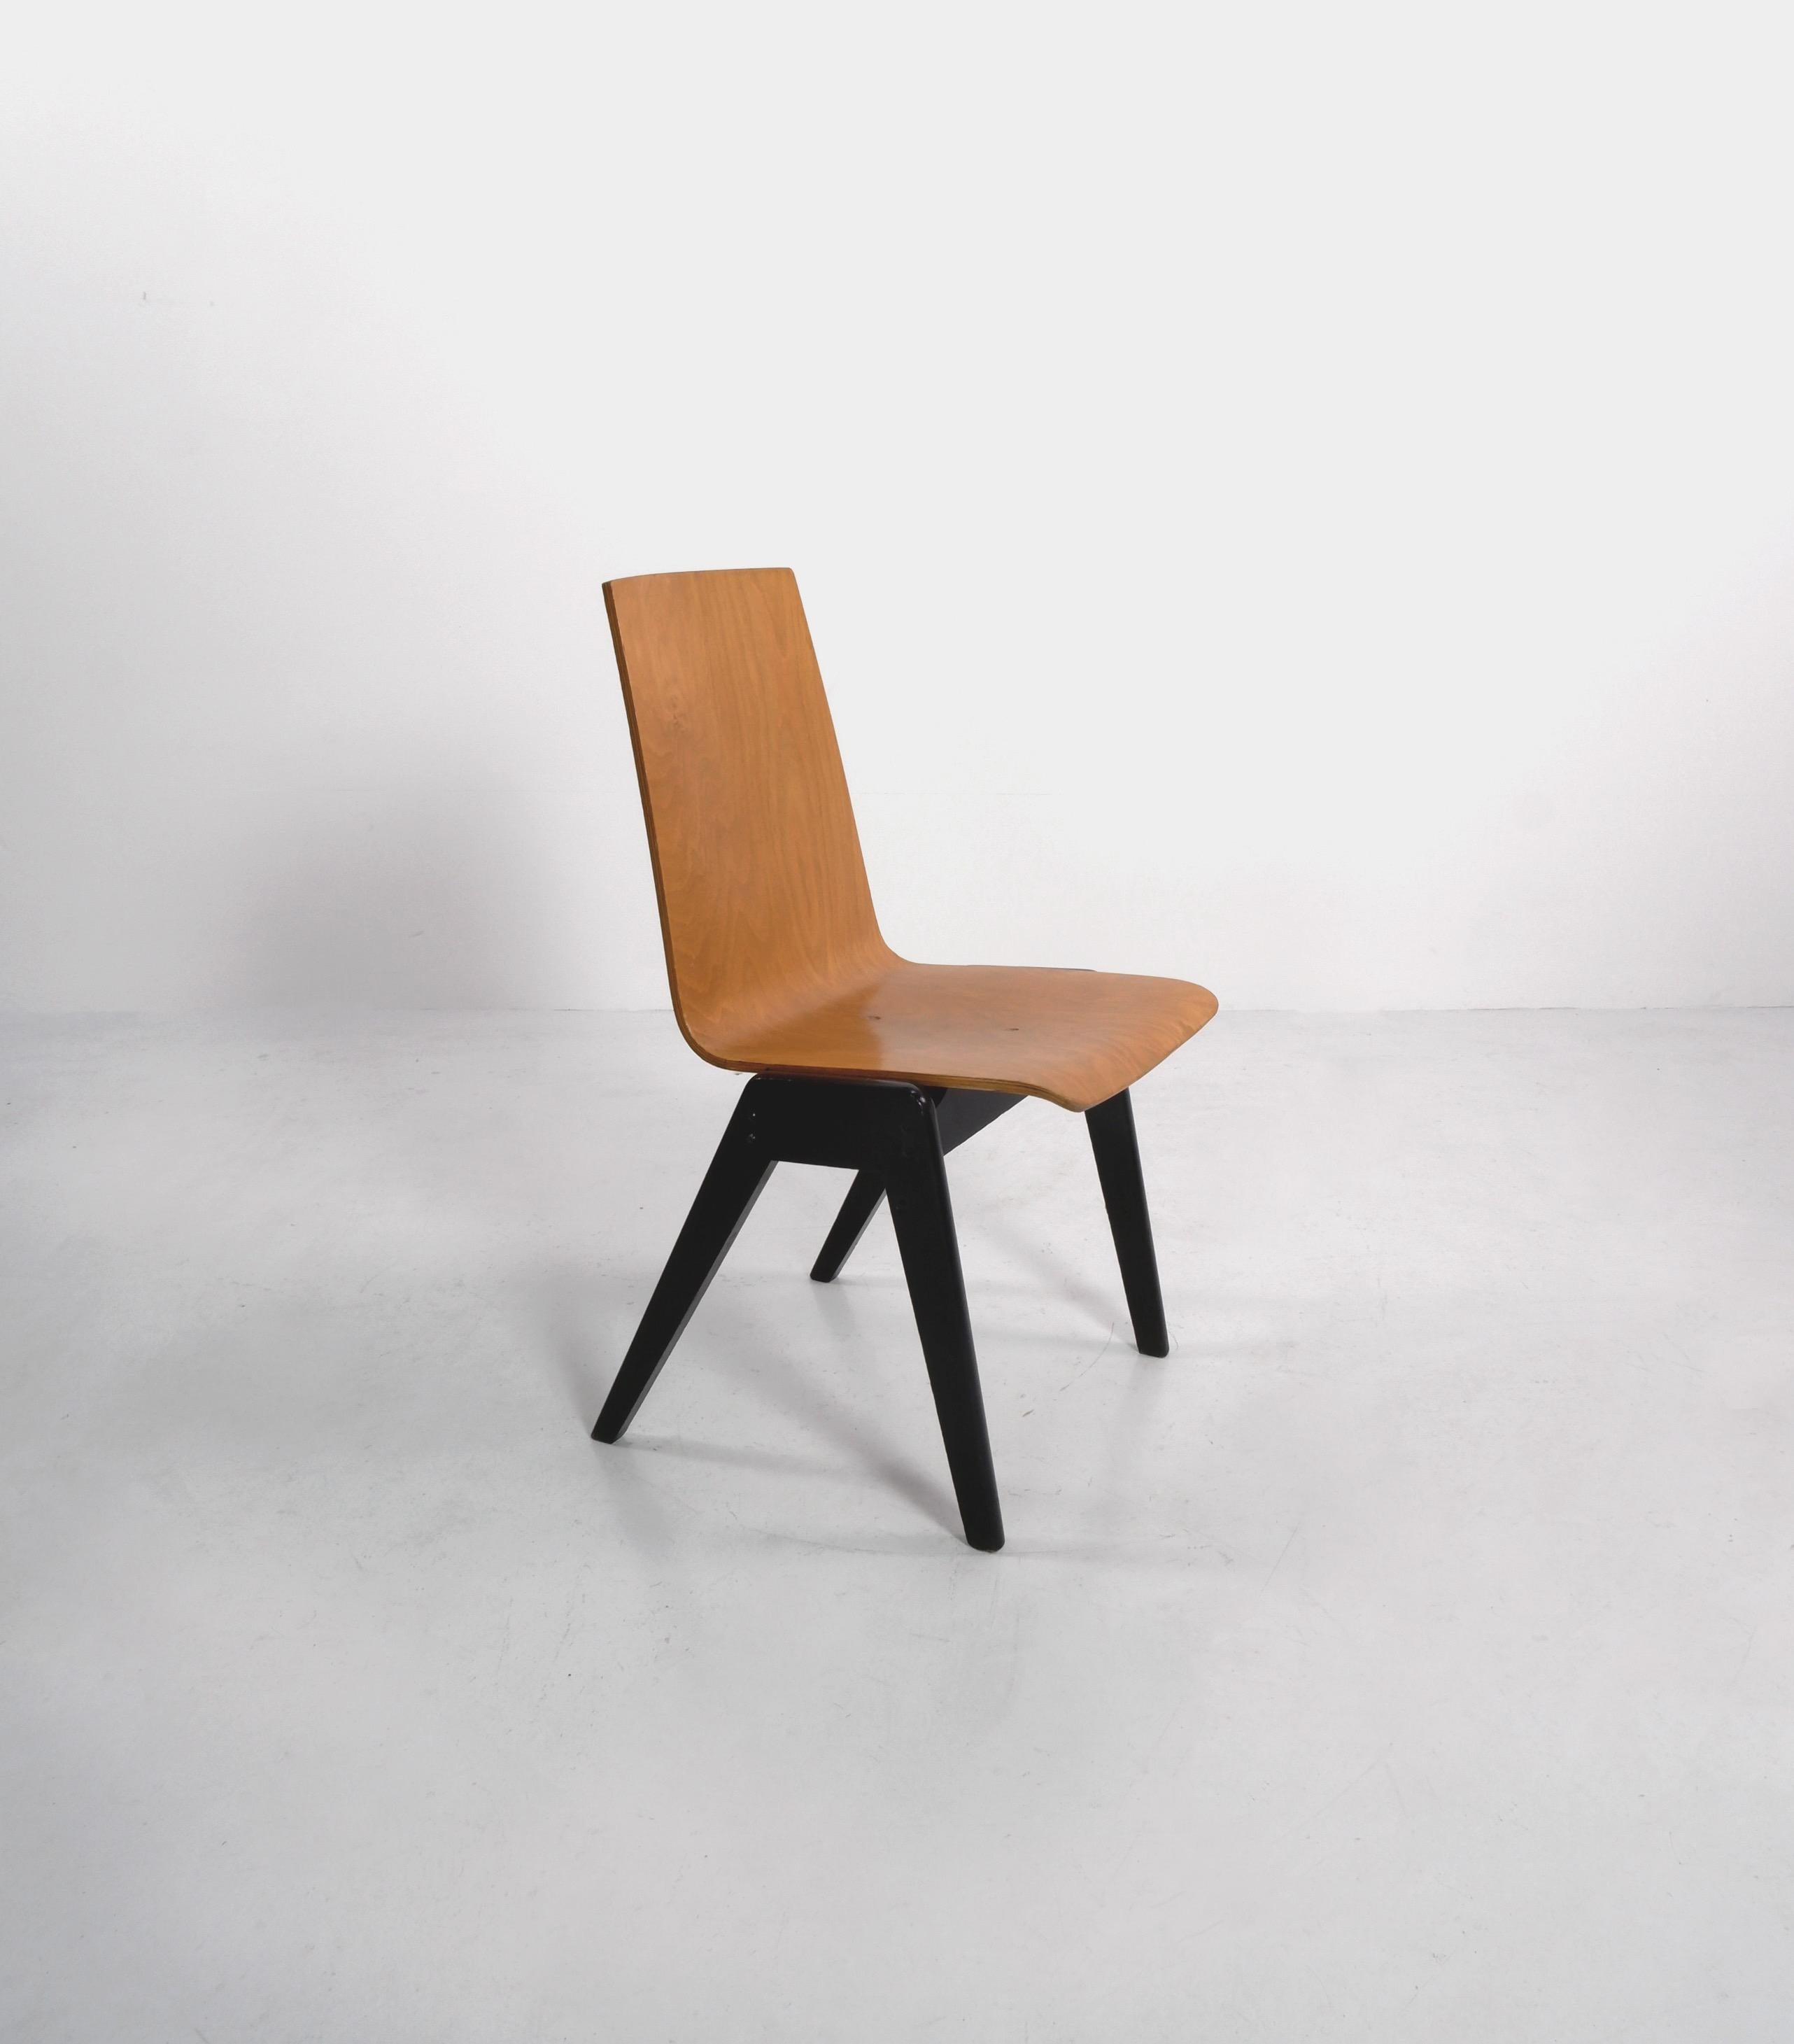 Chaises empilables en contreplaqué attribuées à l'architecte autrichien Roland Rainer. 

Il y a 7 chaises disponibles, le prix est par chaise. 

Dimensions (cm, environ) : 
Hauteur : 87
Largeur : 48
Profondeur : 55.